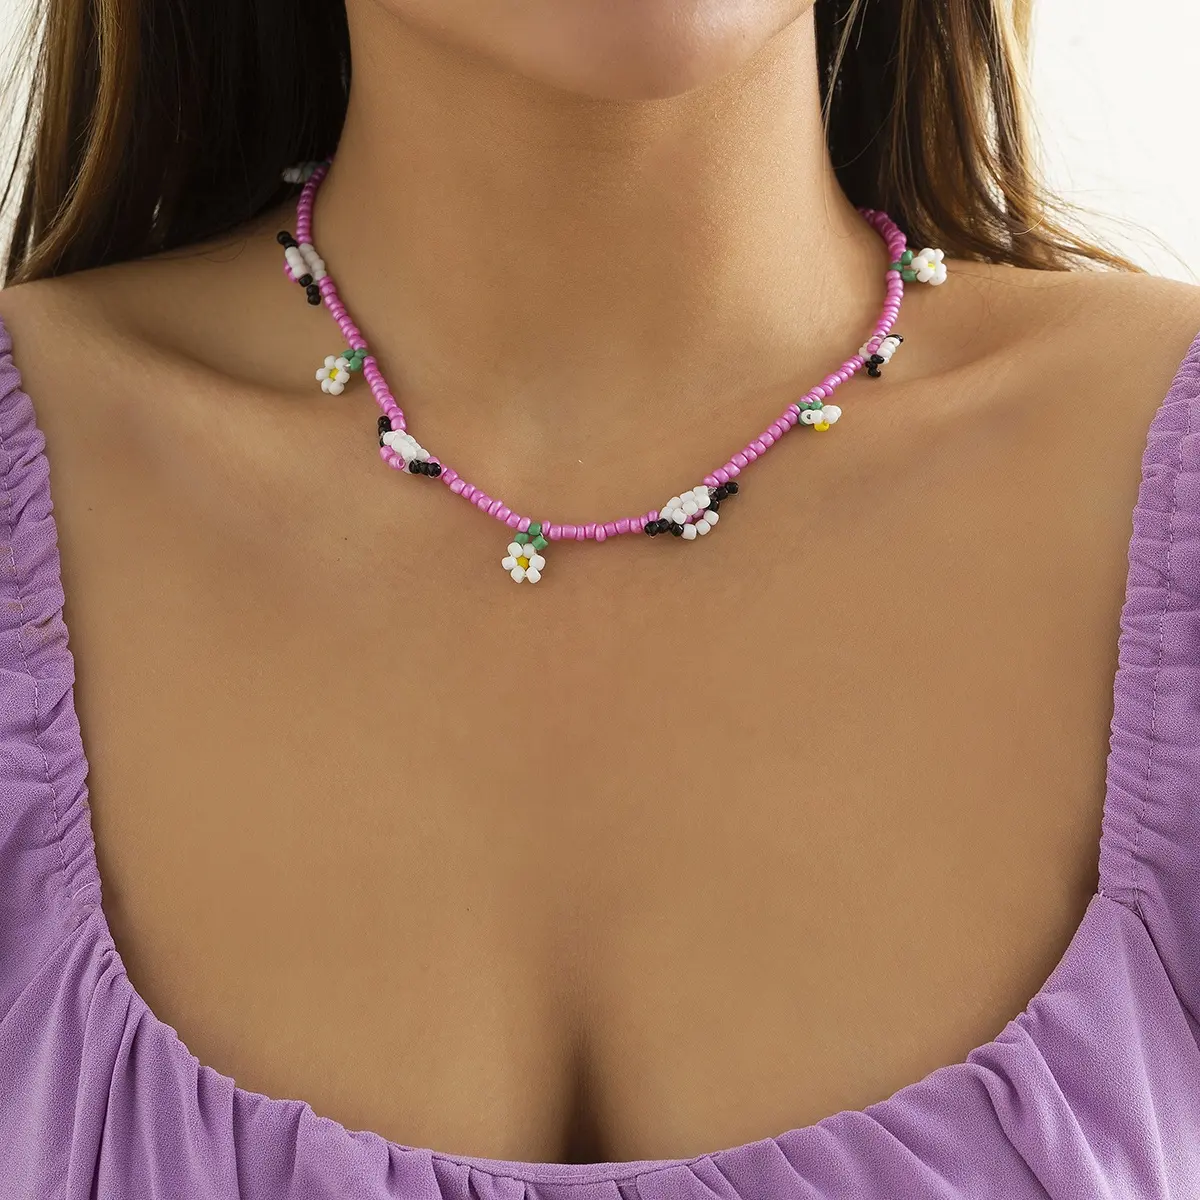 SHIXIN Anpassung Hochwertige bunte Blumen perlen Anhänger Kette Choker Halskette Schmuck für Frauen